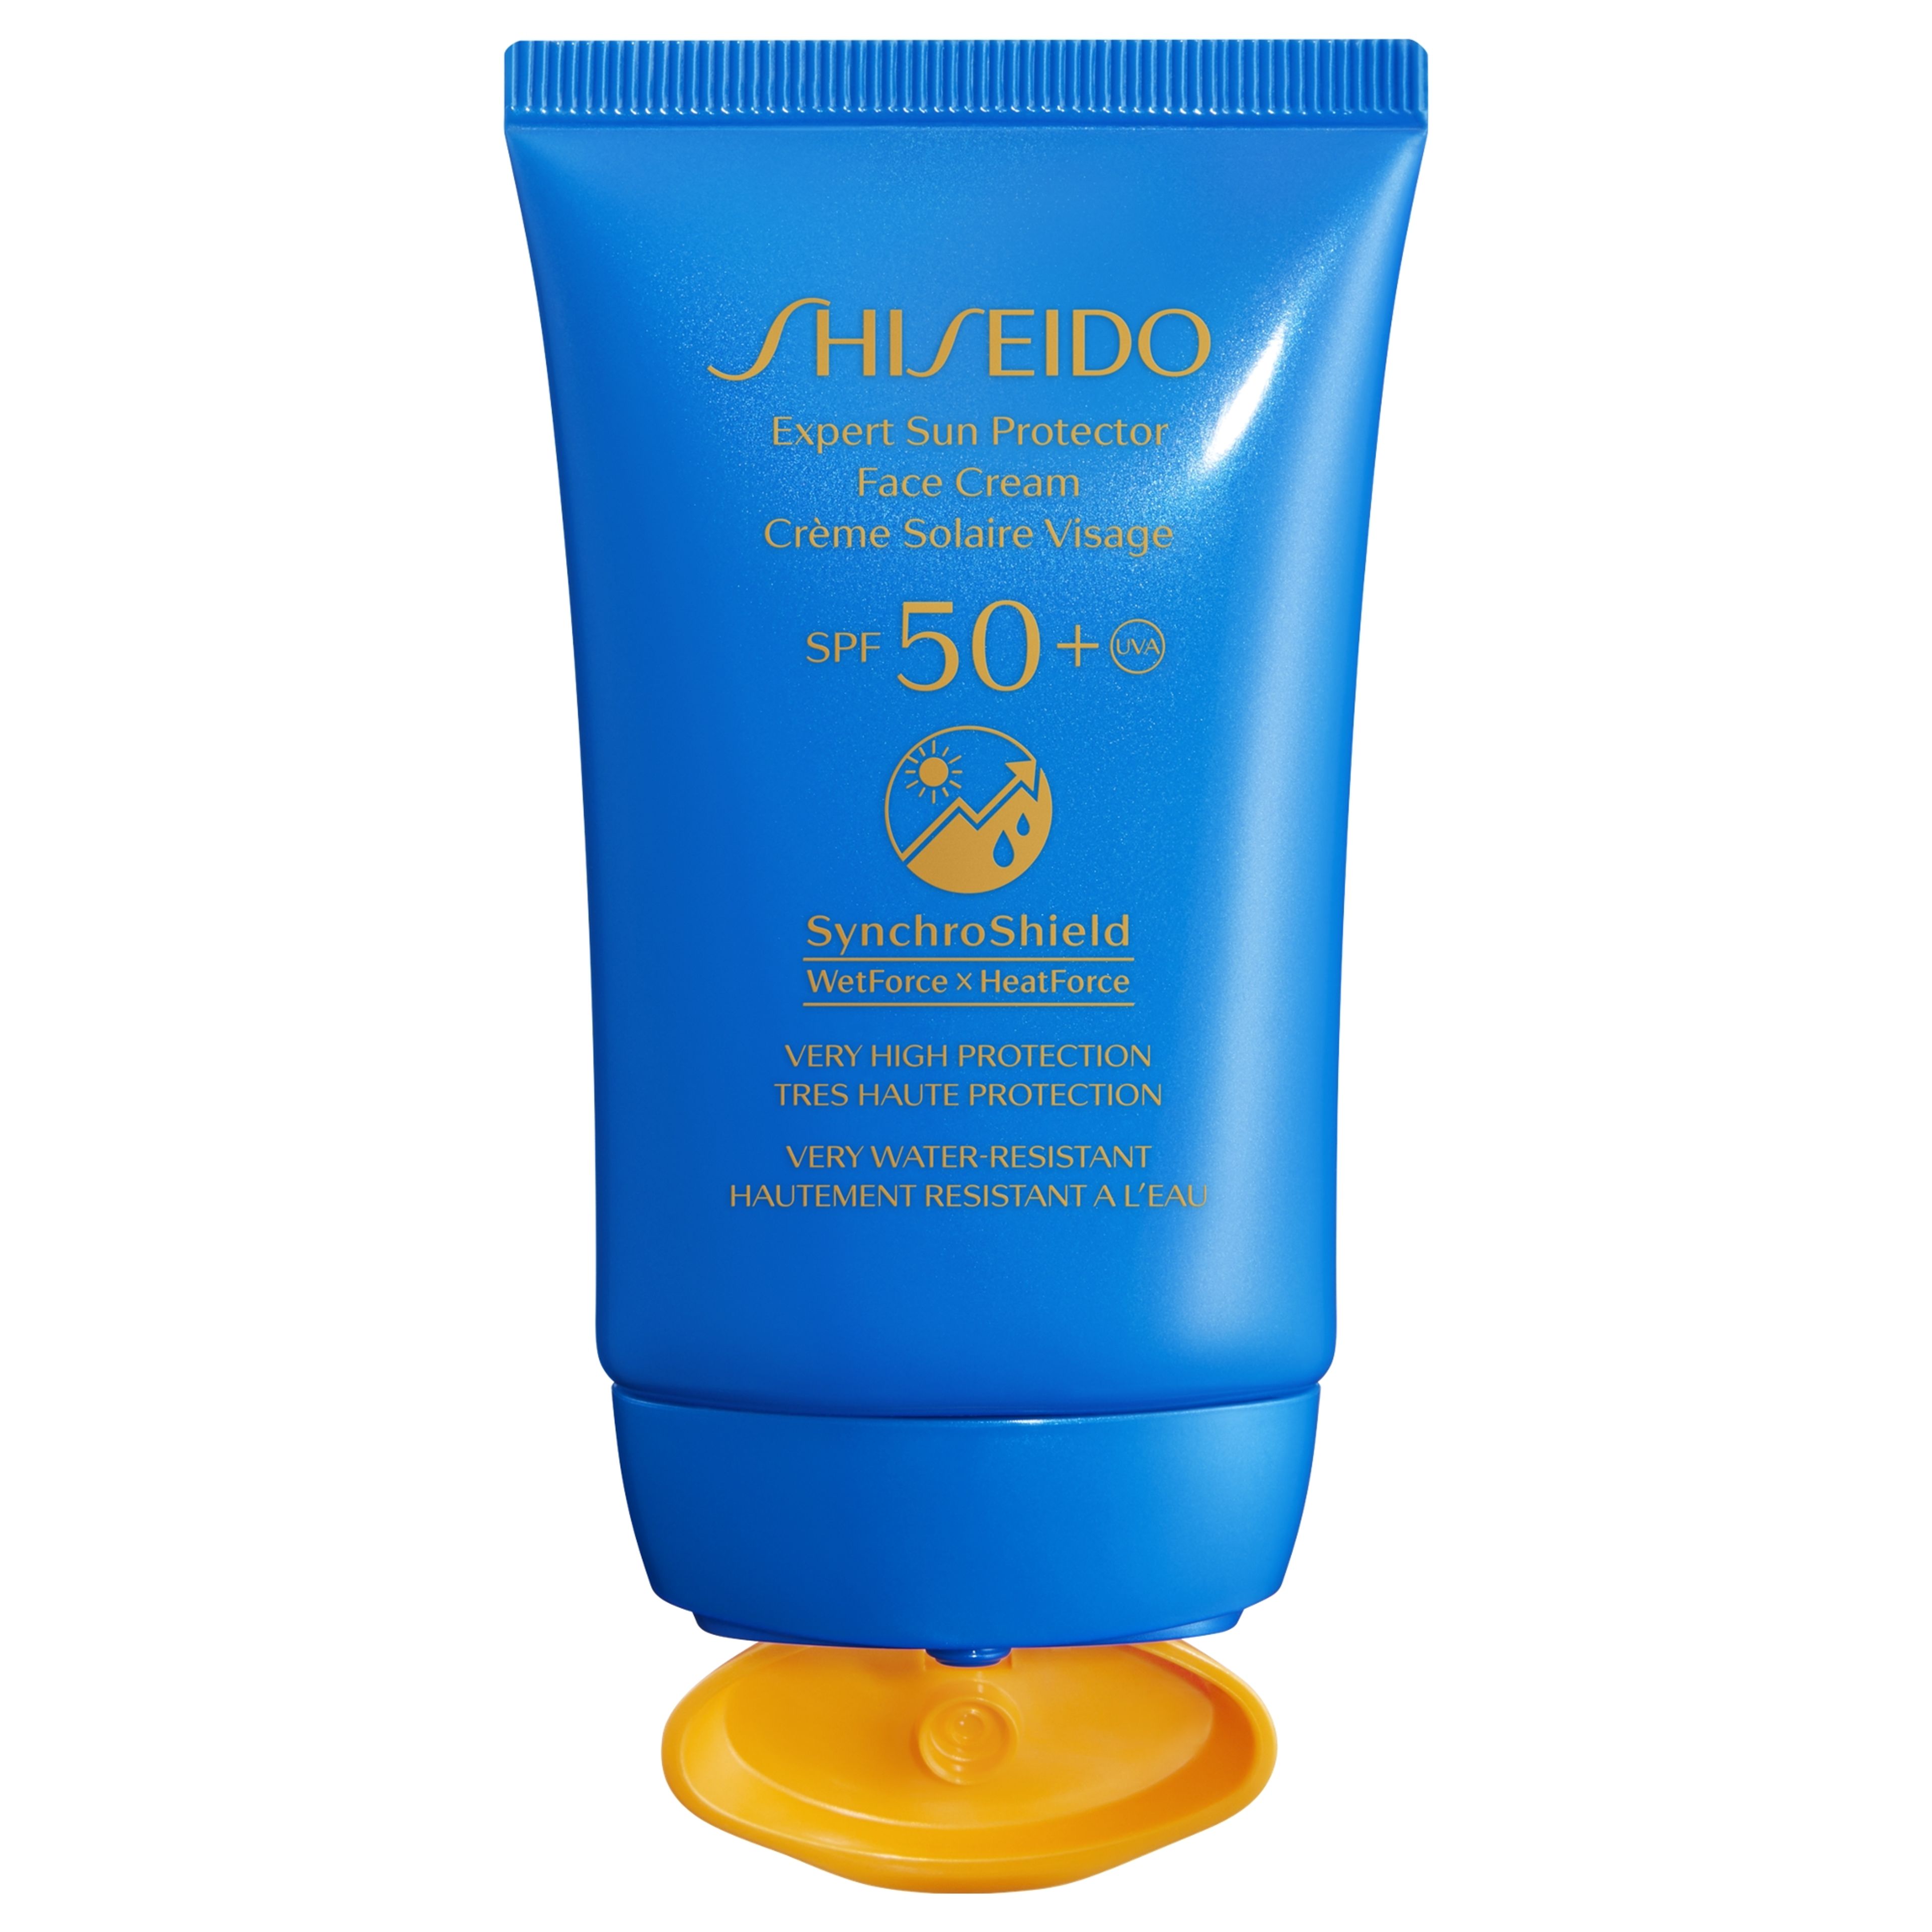 Shiseido Expert Sun Protector
face Cream 
spf50+ 2